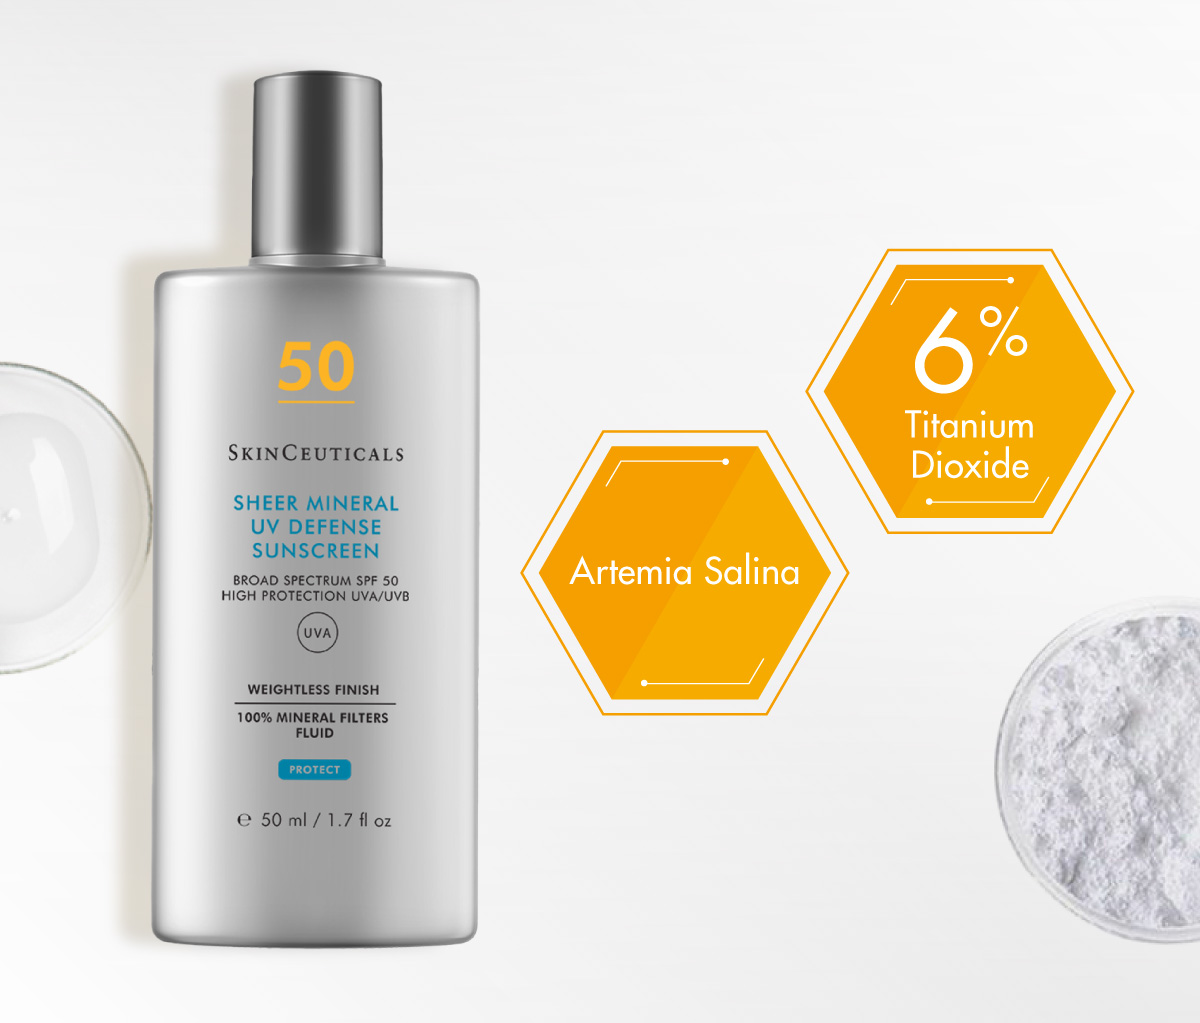 Kem Chống Nắng SkinCeuticals Sheer Mineral UV Defense SPF50 sử dụng 100% màng lọc vật lý phổ rộng giúp bảo vệ da tối ưu trước tia UV